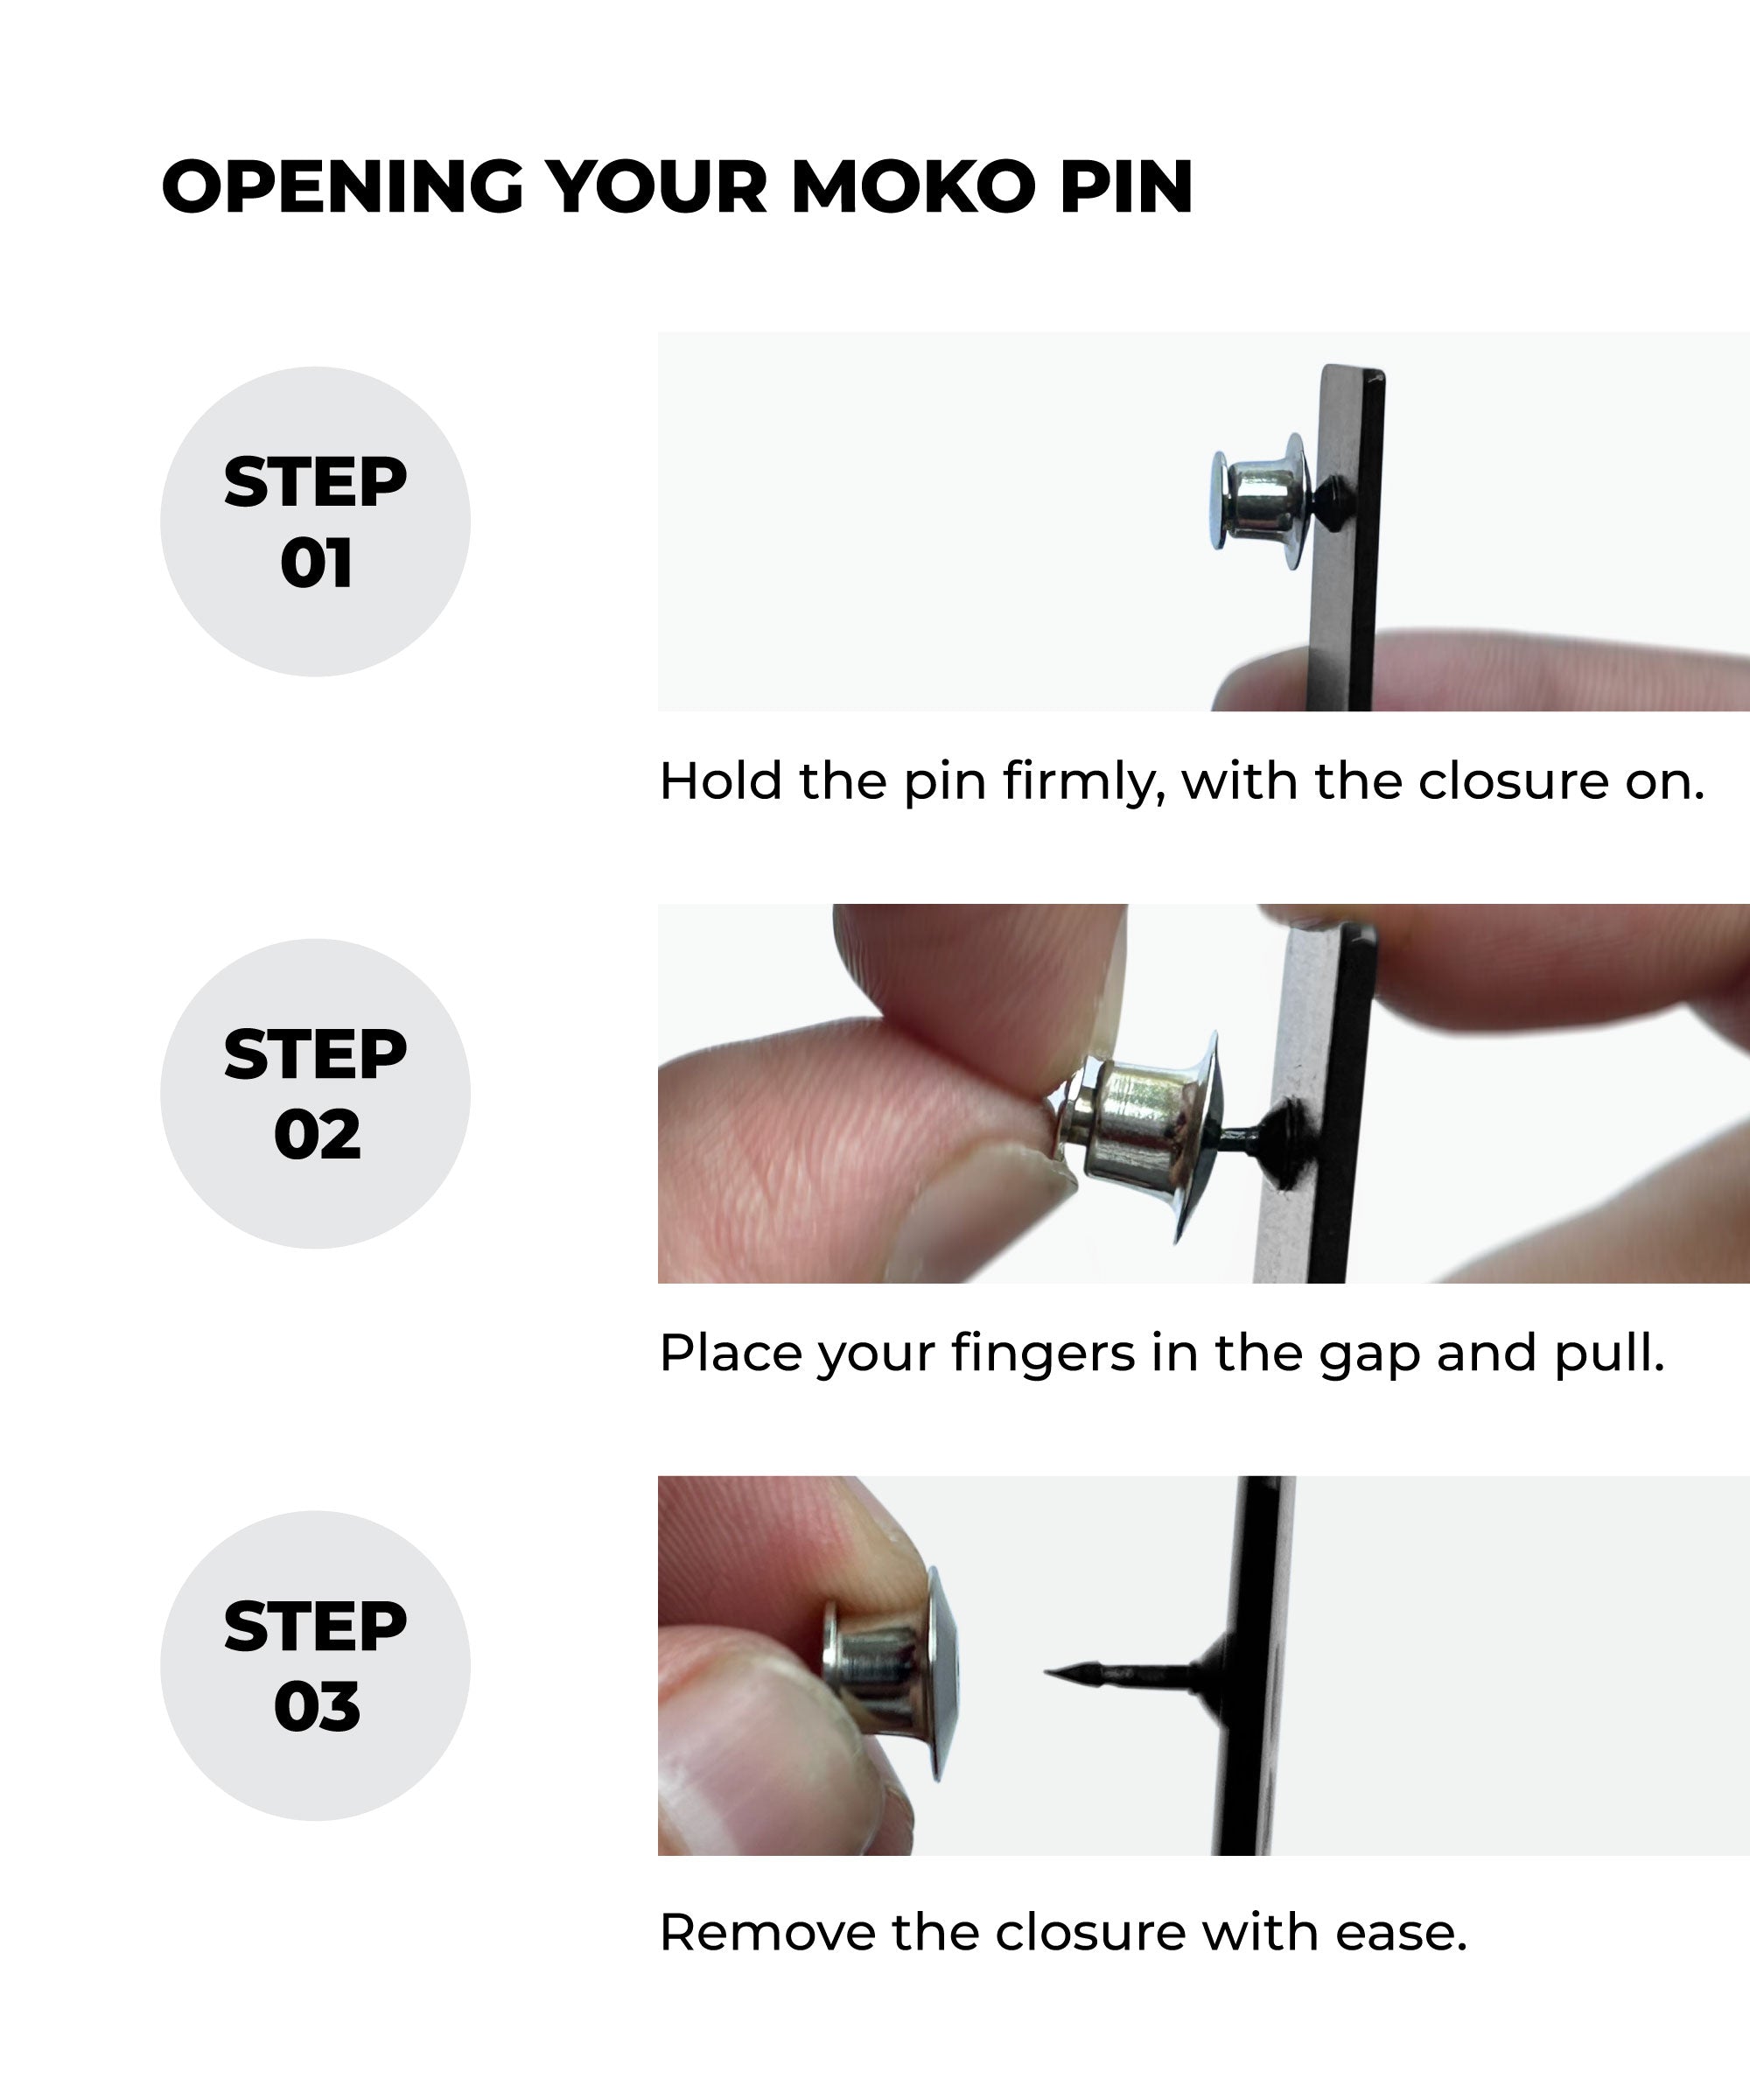 The Moko Pin